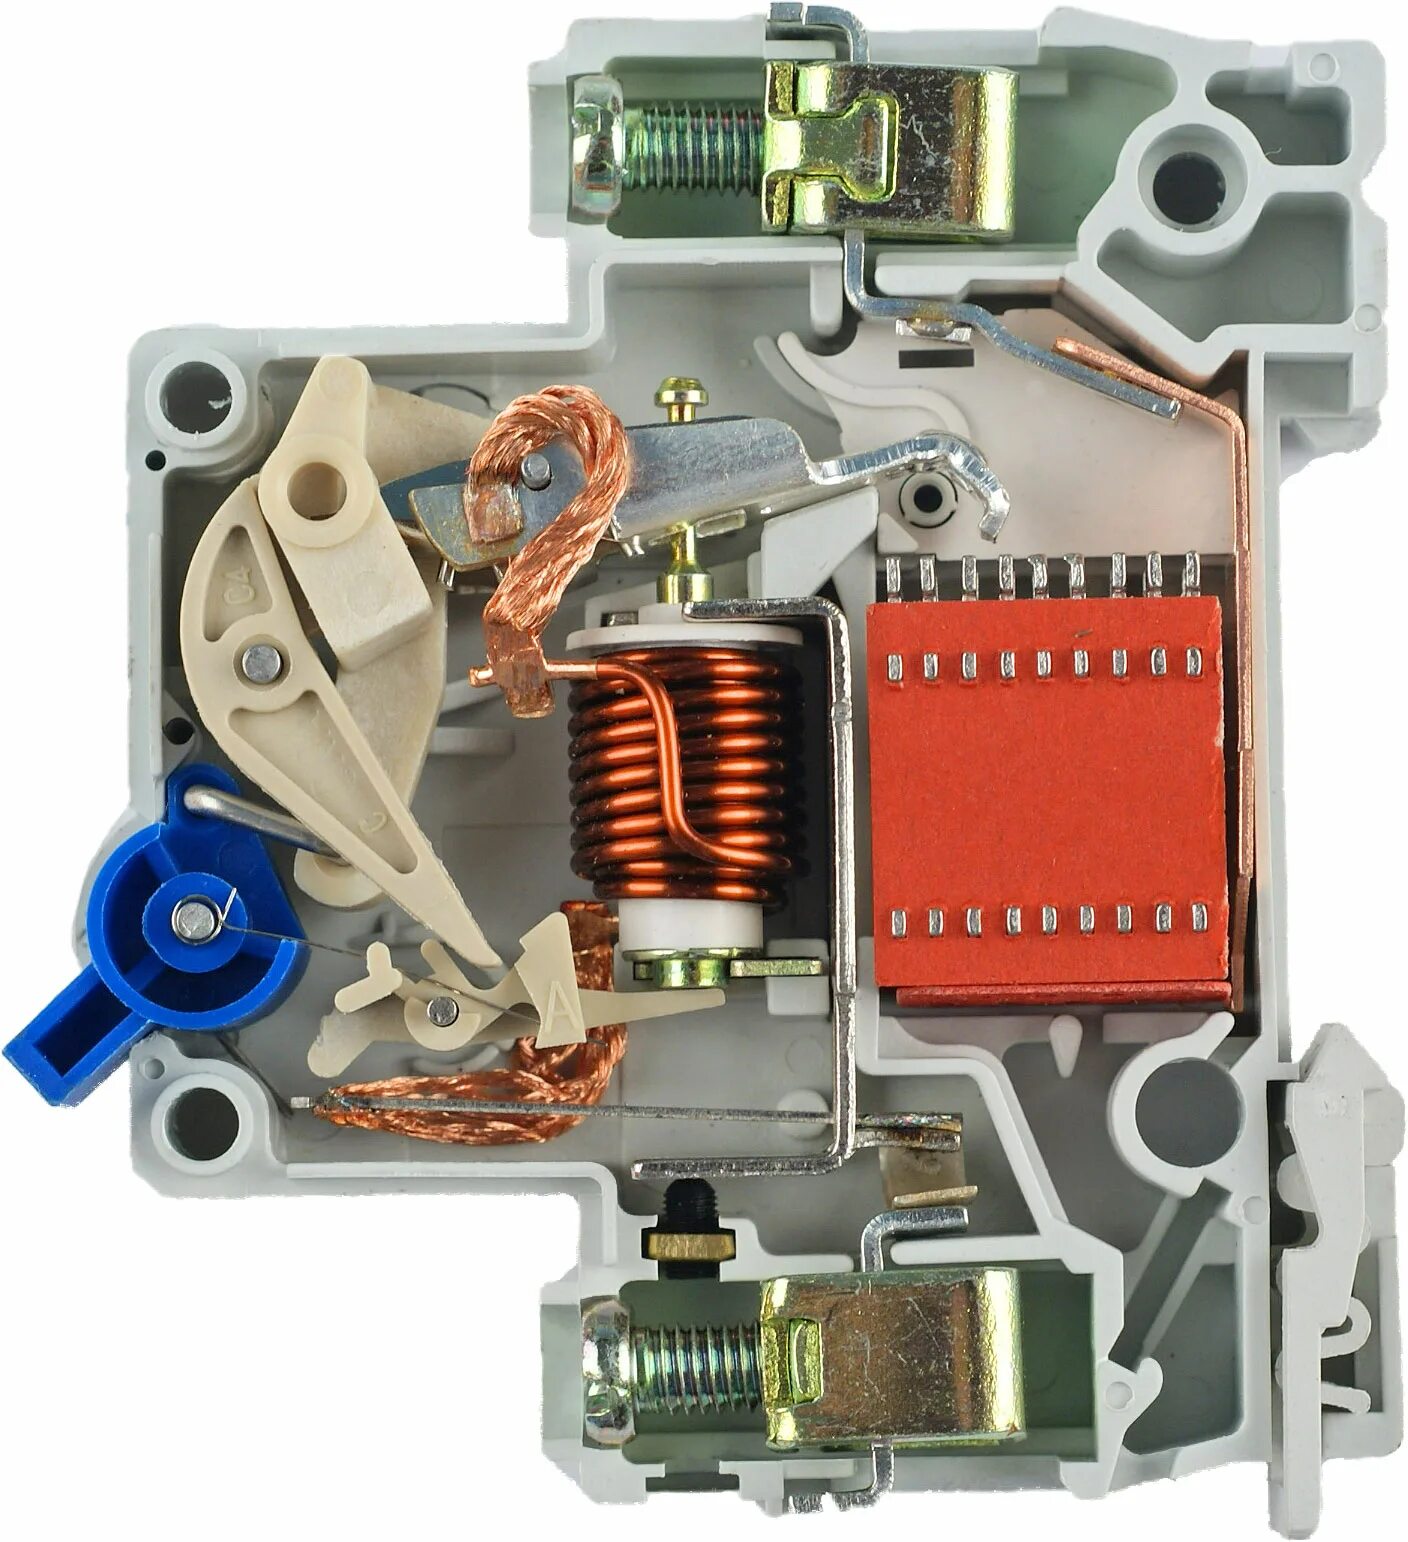 Тепловой расцепитель автоматического выключателя. Конструкция автоматического выключателя ва47-29. Электронный расцепитель автоматического выключателя. Внутреннее устройство автоматического выключателя ABB.